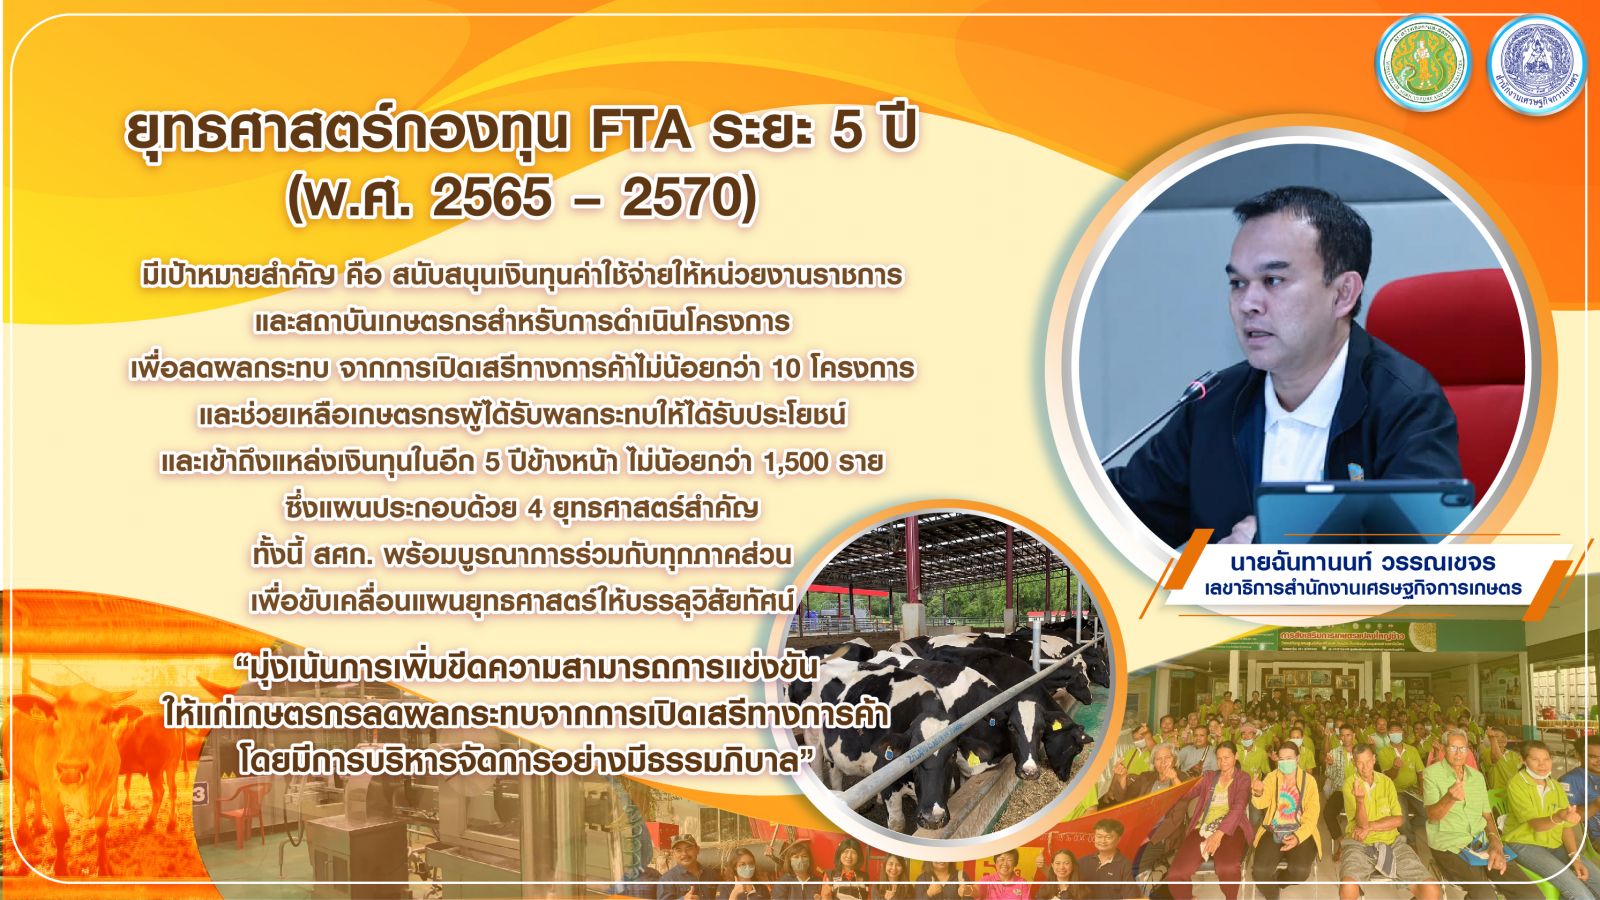 สศก. พร้อมขับเคลื่อนแผนยุทธศาสตร์กองทุน FTA ระยะ 5 ปี ดันเกษตรไทย ให้ก้าวทันโลกการค้าเสรี